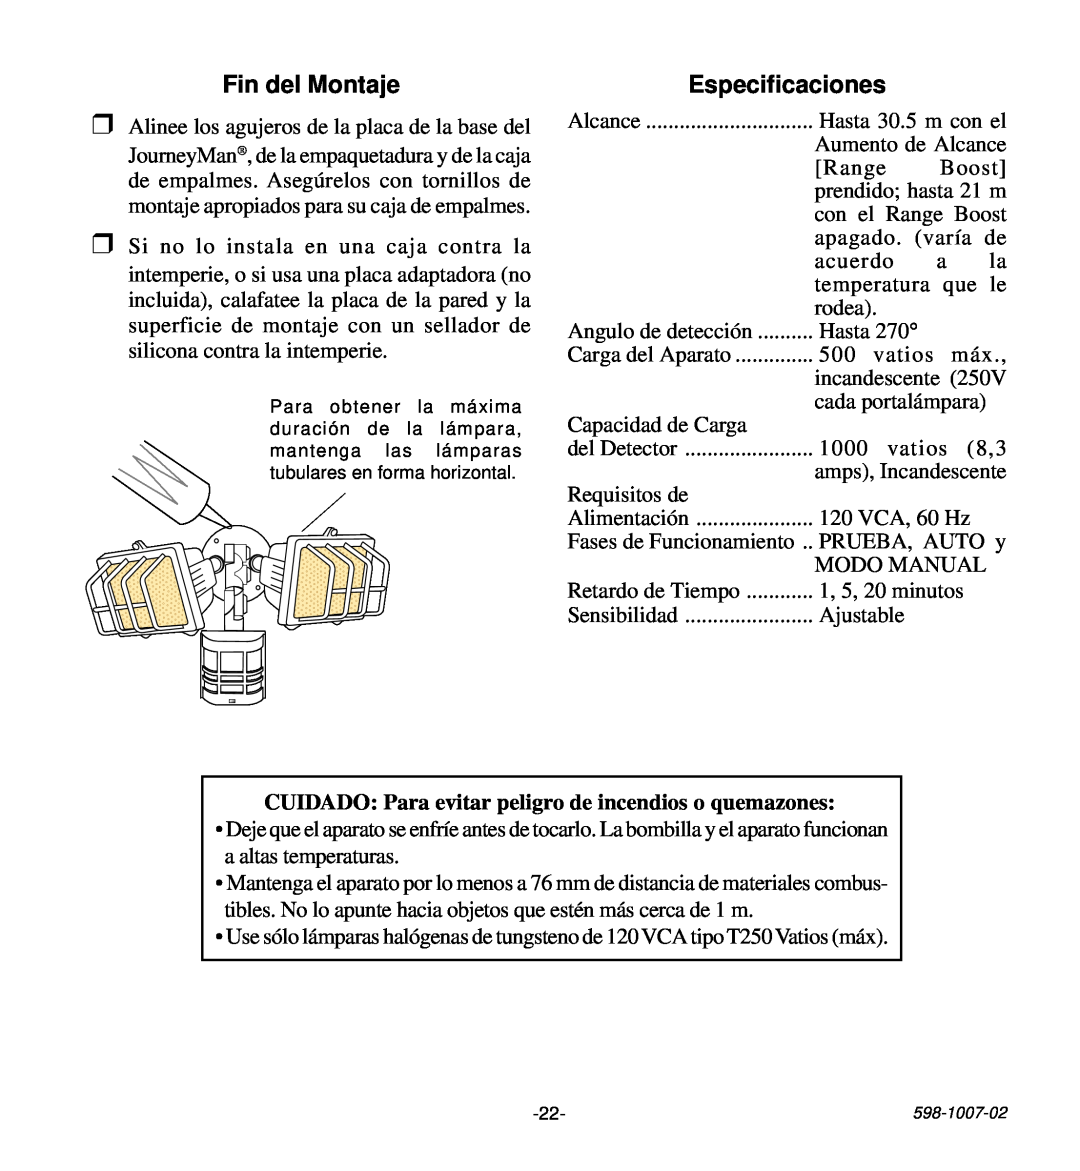 Desa HD-9260 manual Fin del Montaje, Especificaciones 